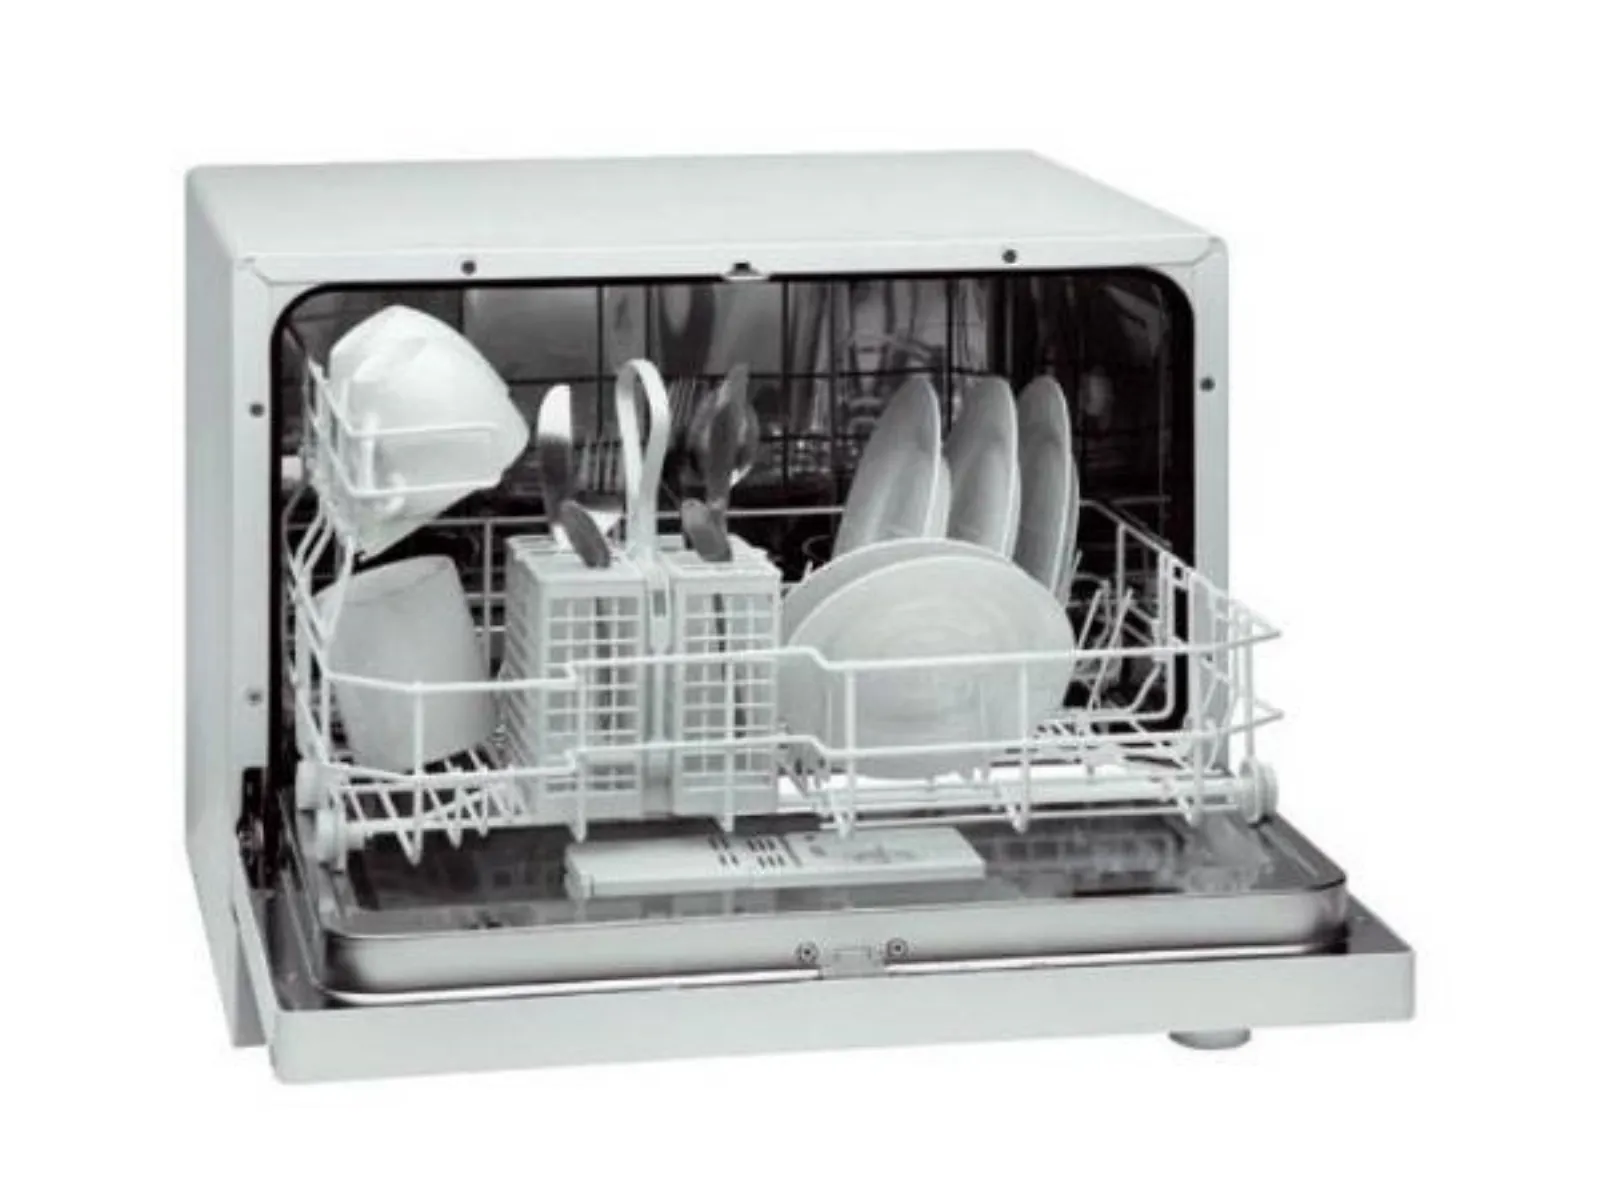 Купить настольную посудомоечную машину недорого. Посудомоечная машина (компактная) Hi HCO-550801. Bomann посудомоечная машина.